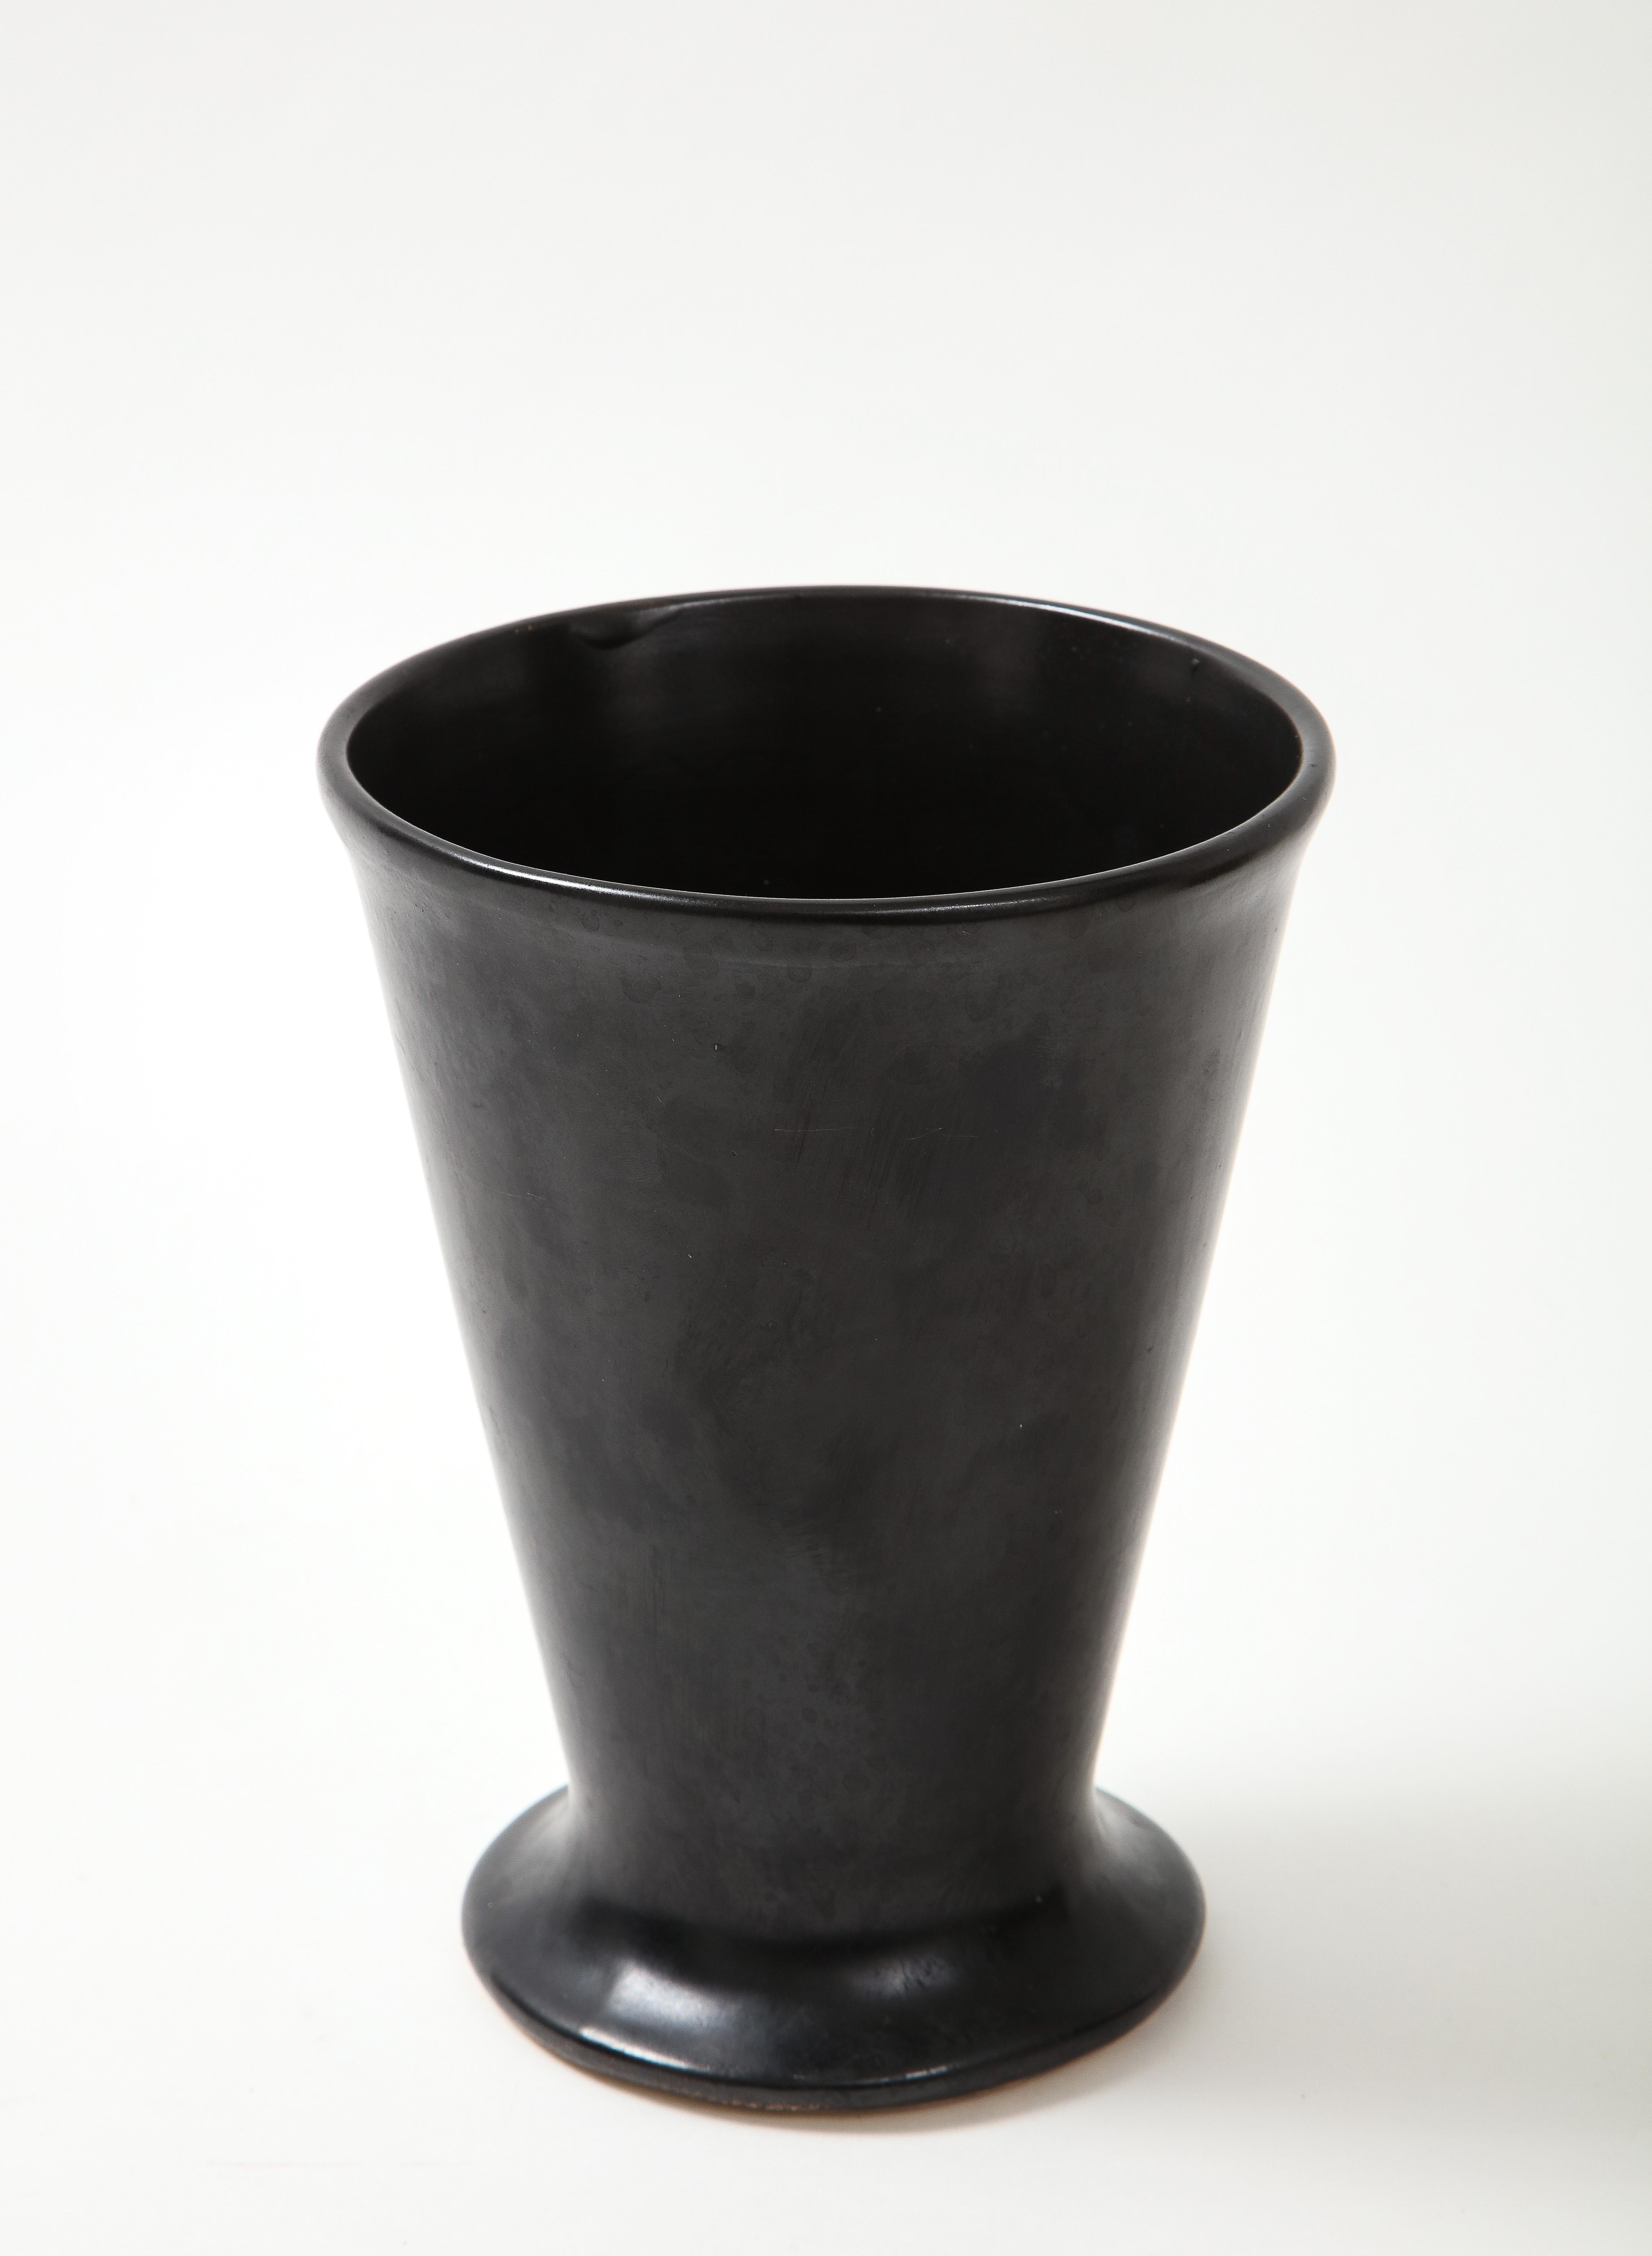 Black matte vase in the manner of Georges Jouve, France, c. 1960.